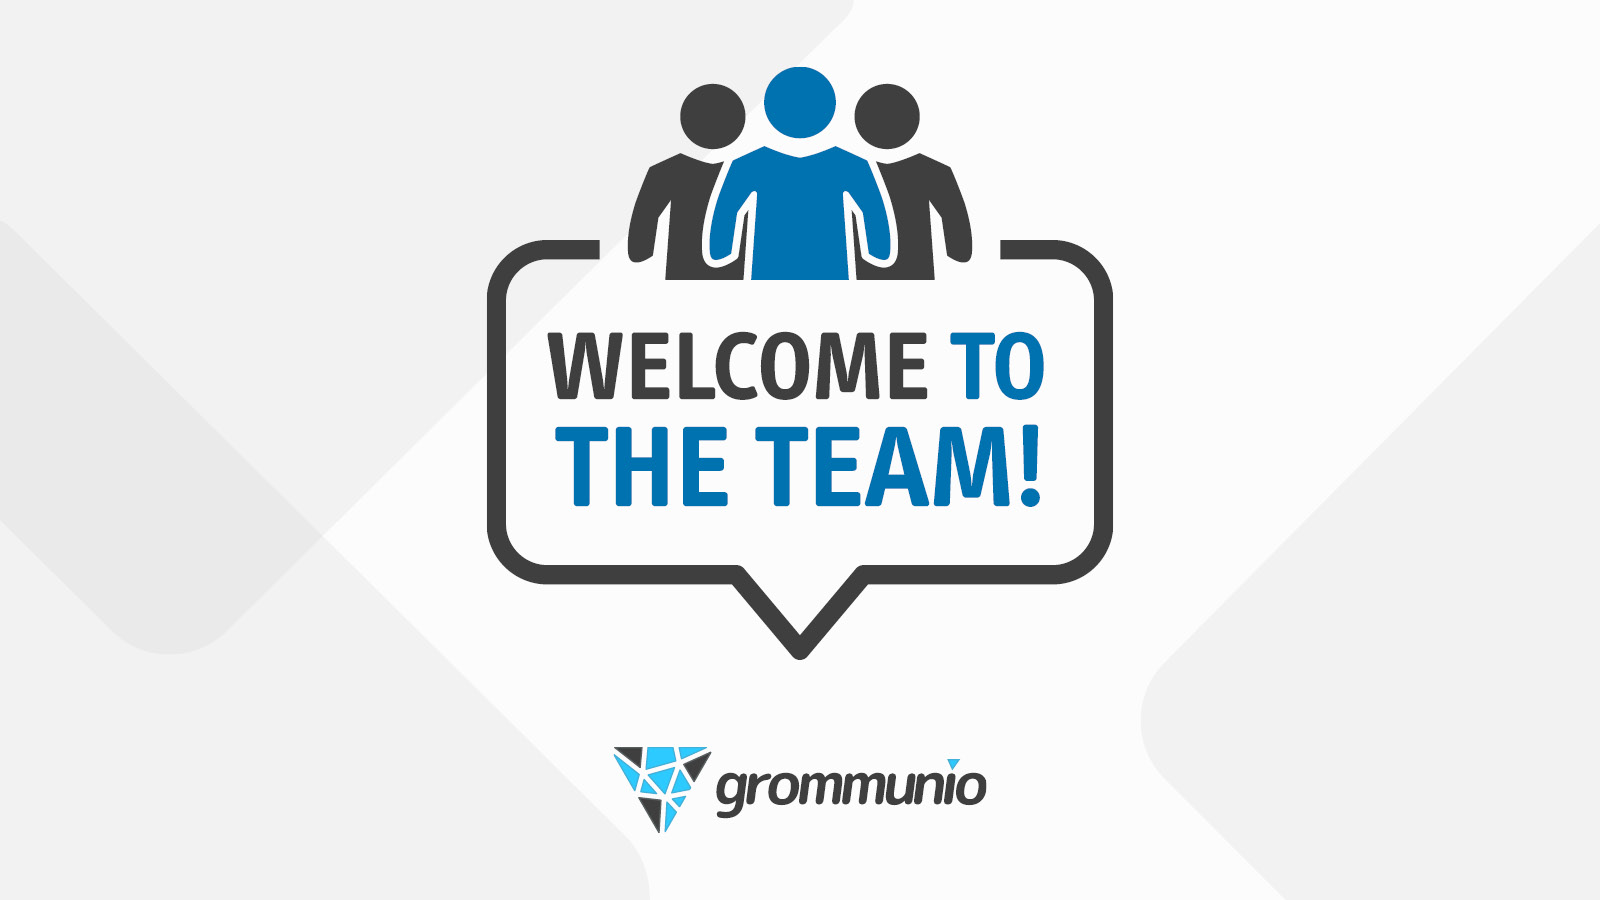 grommunio announces new CTO Michael Kromer at Grazer Linuxtage